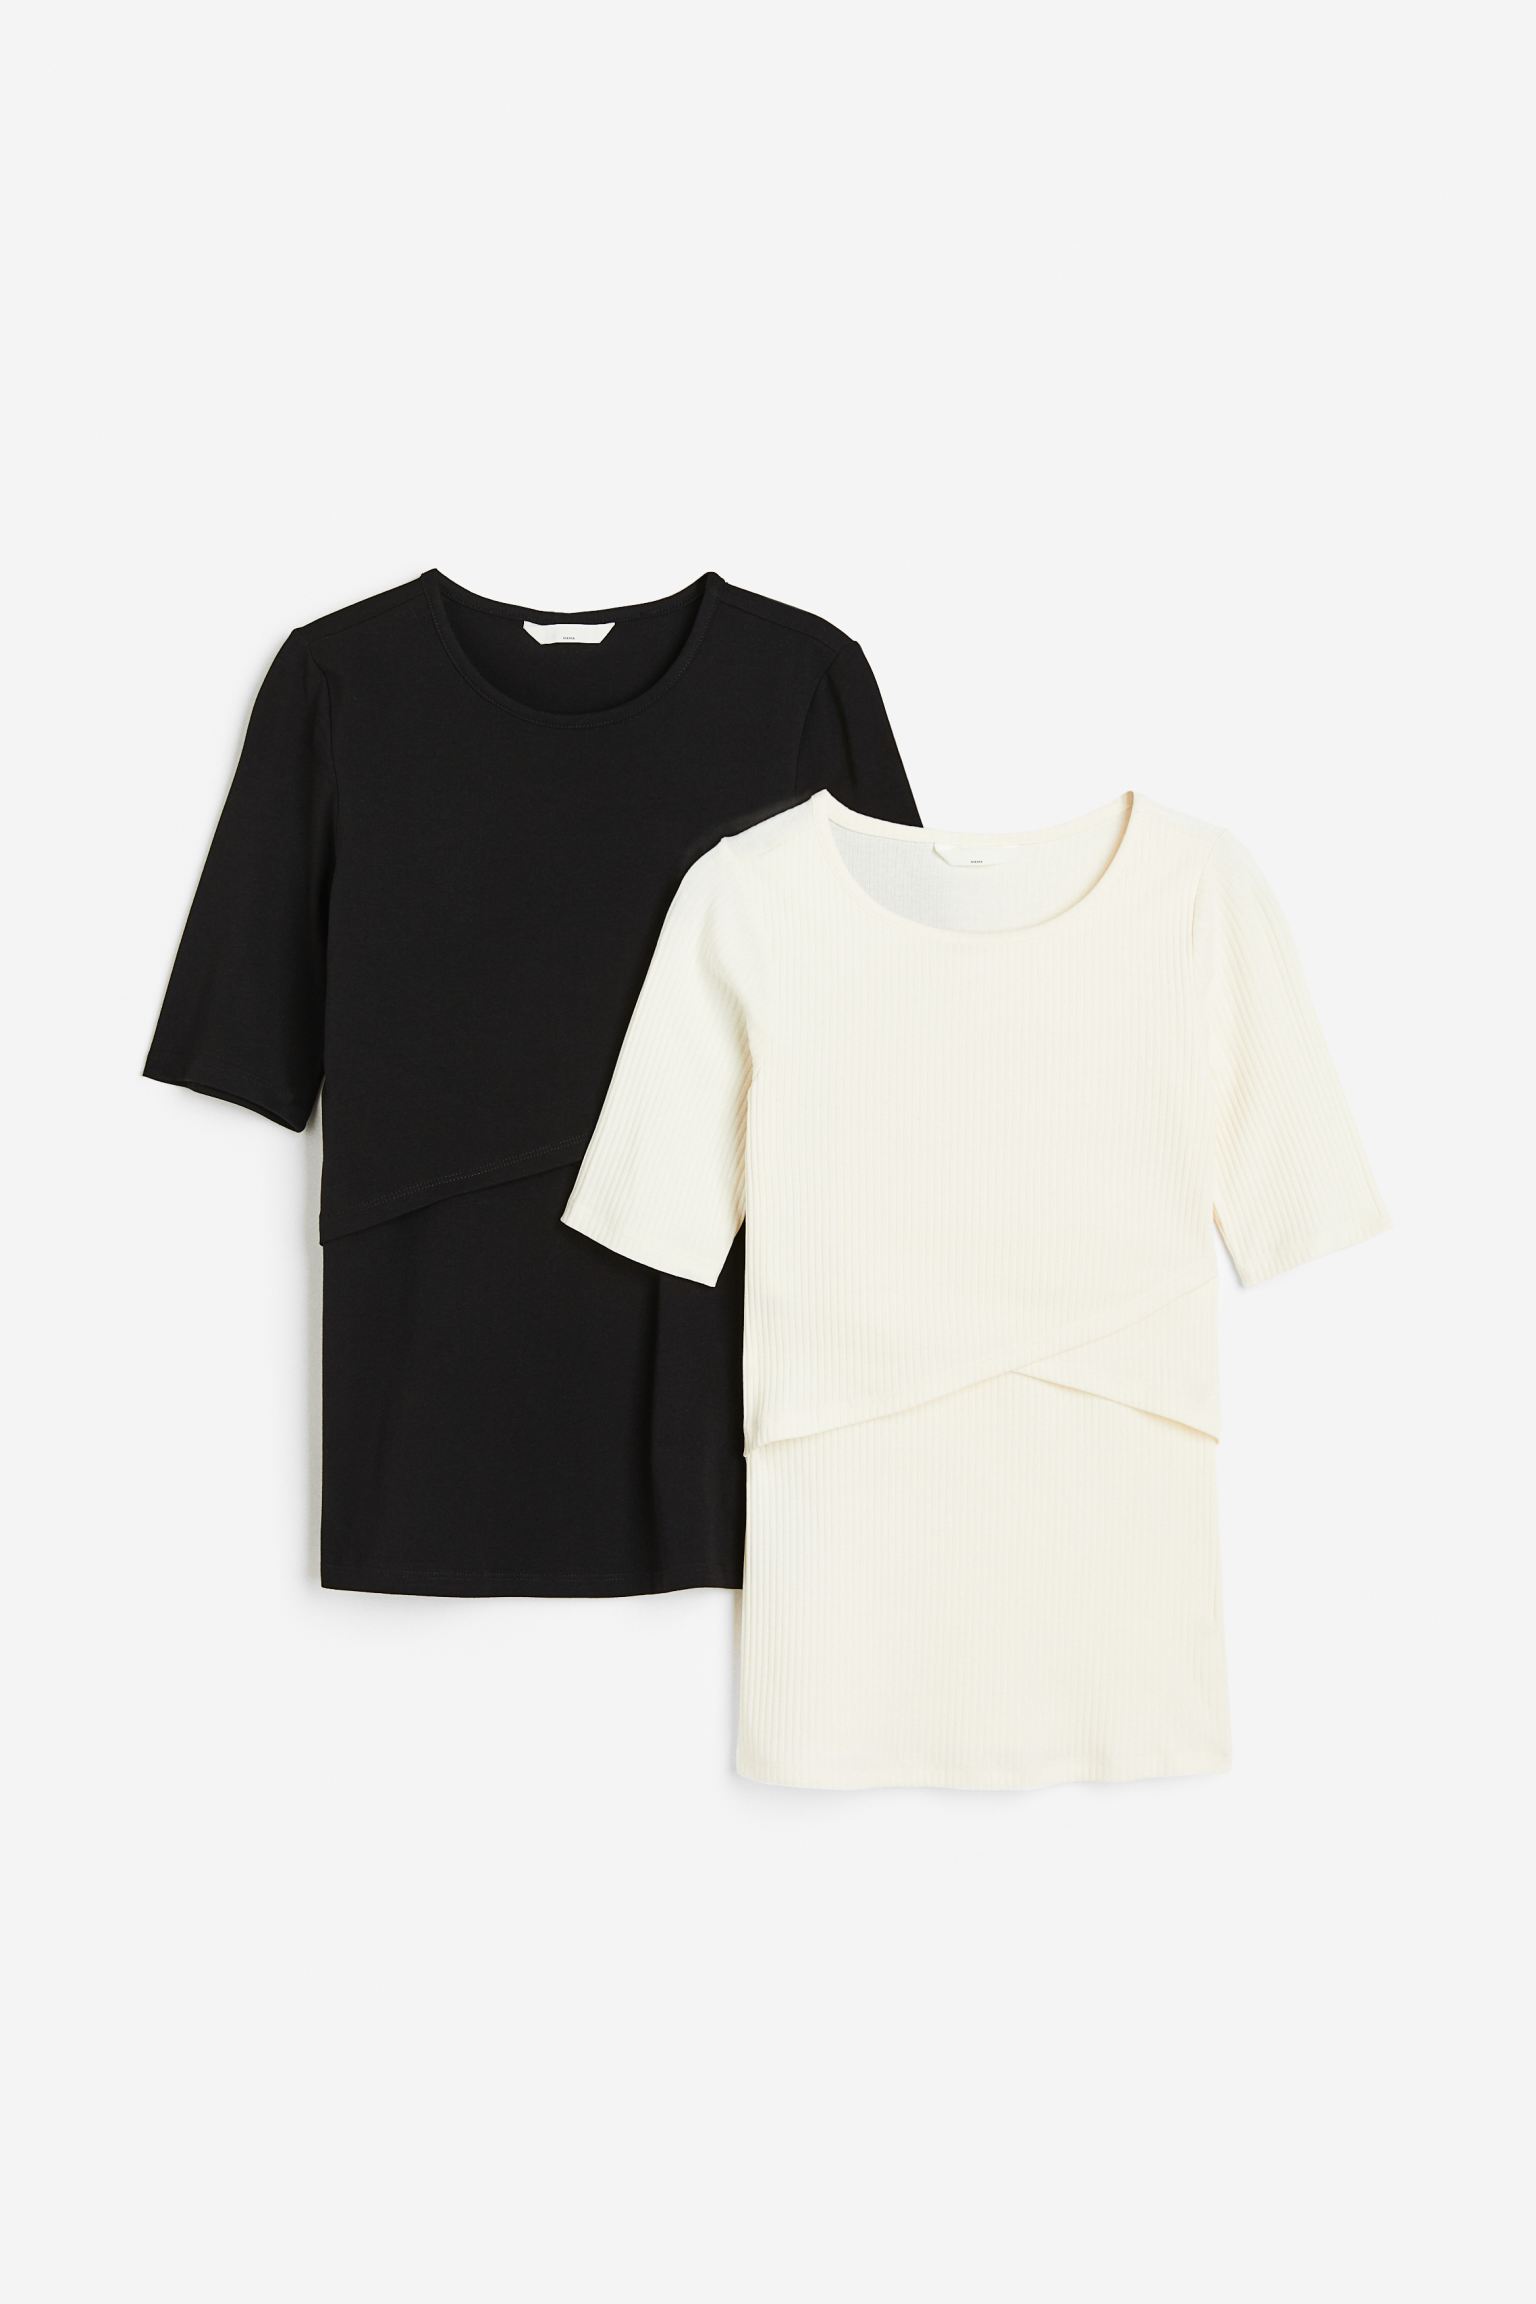 Комплект футболок женских H&M 1030507004 черных L (доставка из-за рубежа)